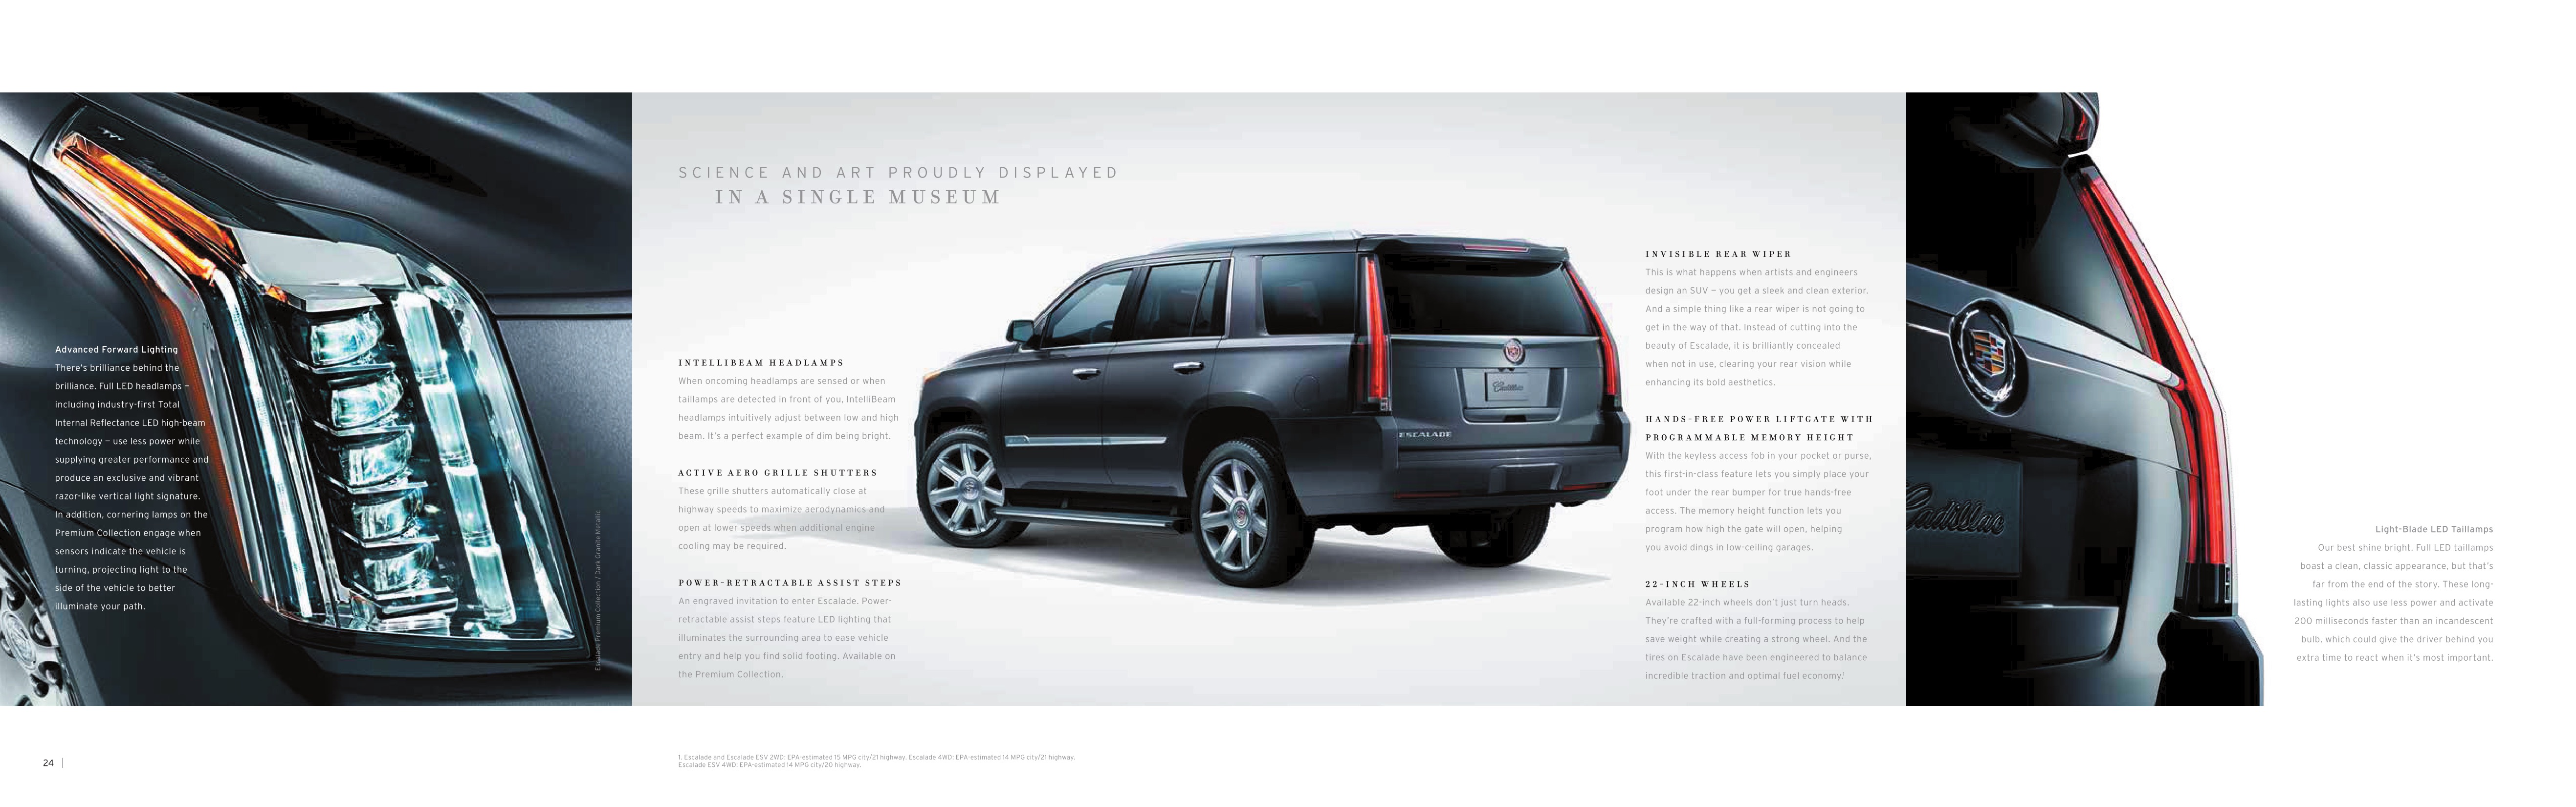 2015 Cadillac Escalade Brochure Page 26